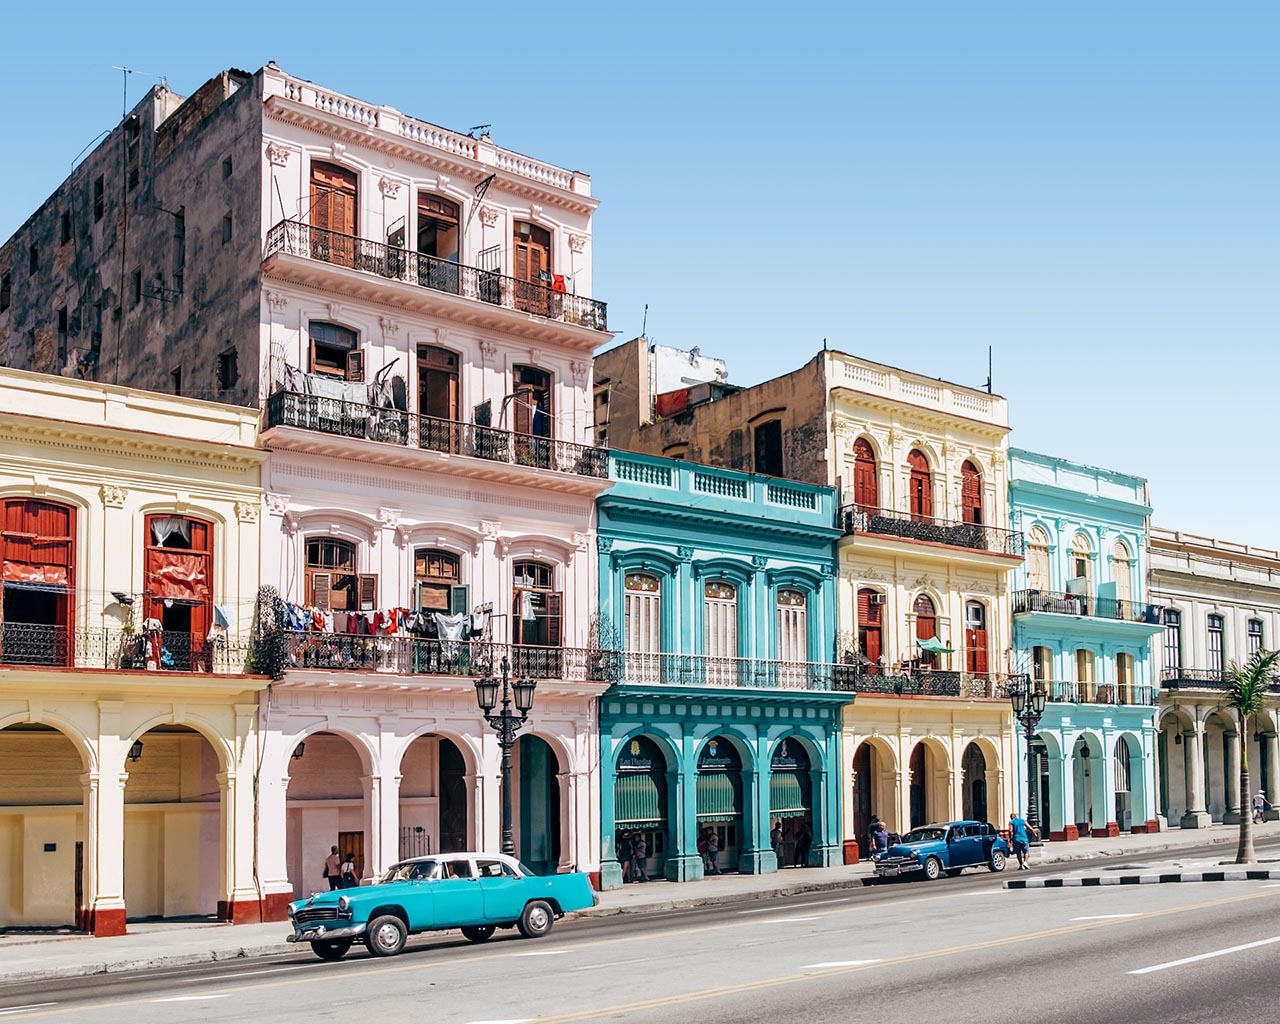 Na imagem em destaque, carros antigos nas ruas de Havana, Cuba - Foto de Spencer Everett / Unsplash